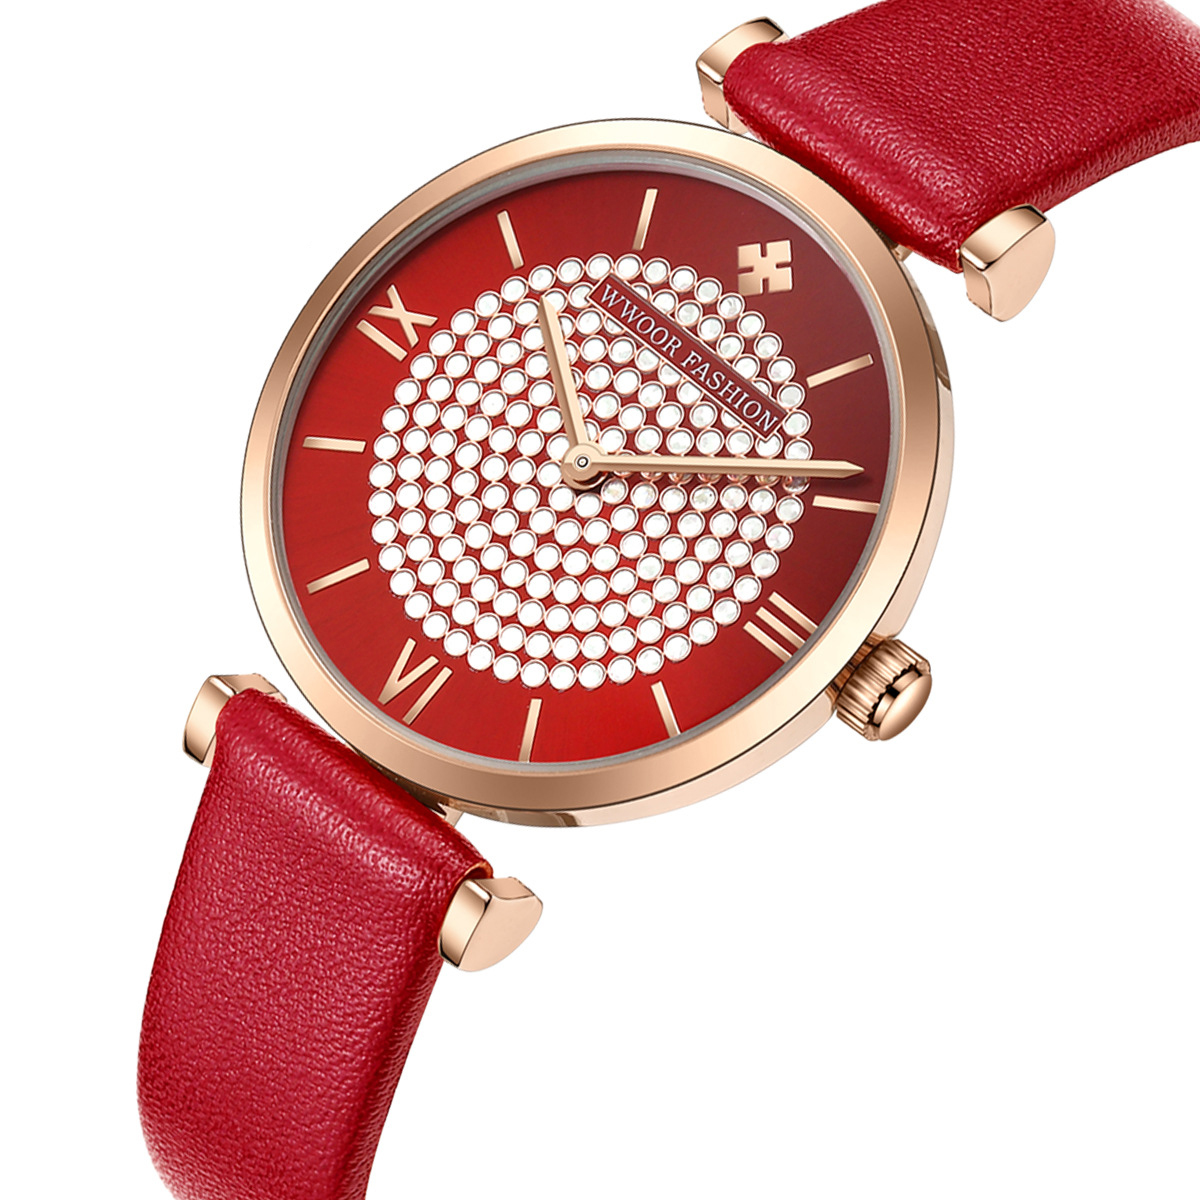 

WWOOR 8851 Sky Diamond Dial Ladies Wrist Watch Leather Watch Band Quartz Watch